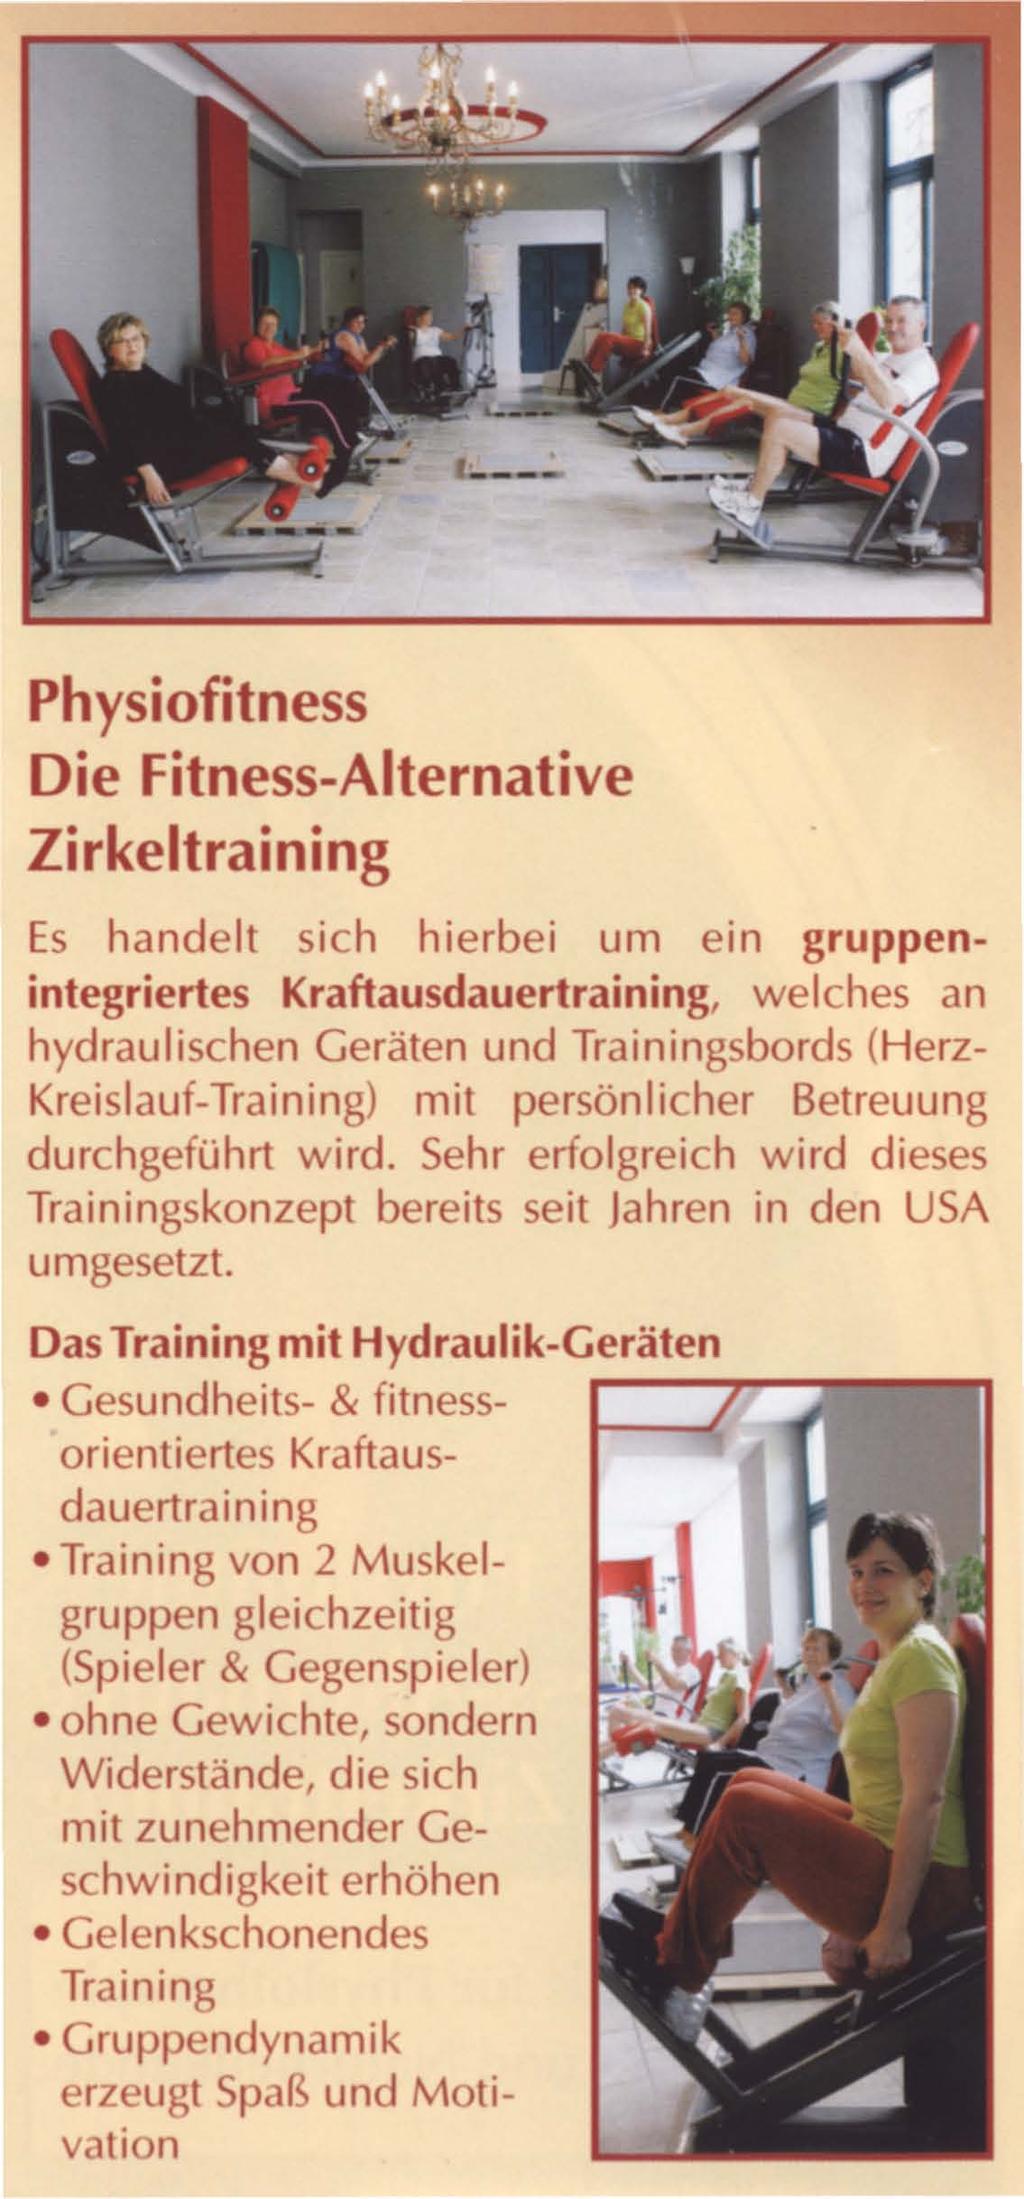 Physiofitness Die Fitness-Alternative Zirkeltraining Es handelt sich hierbei um ein gruppenintegriertes Kraftausdauertraining, welches an hydraulischen Geräten und Trainingsbords (Herz